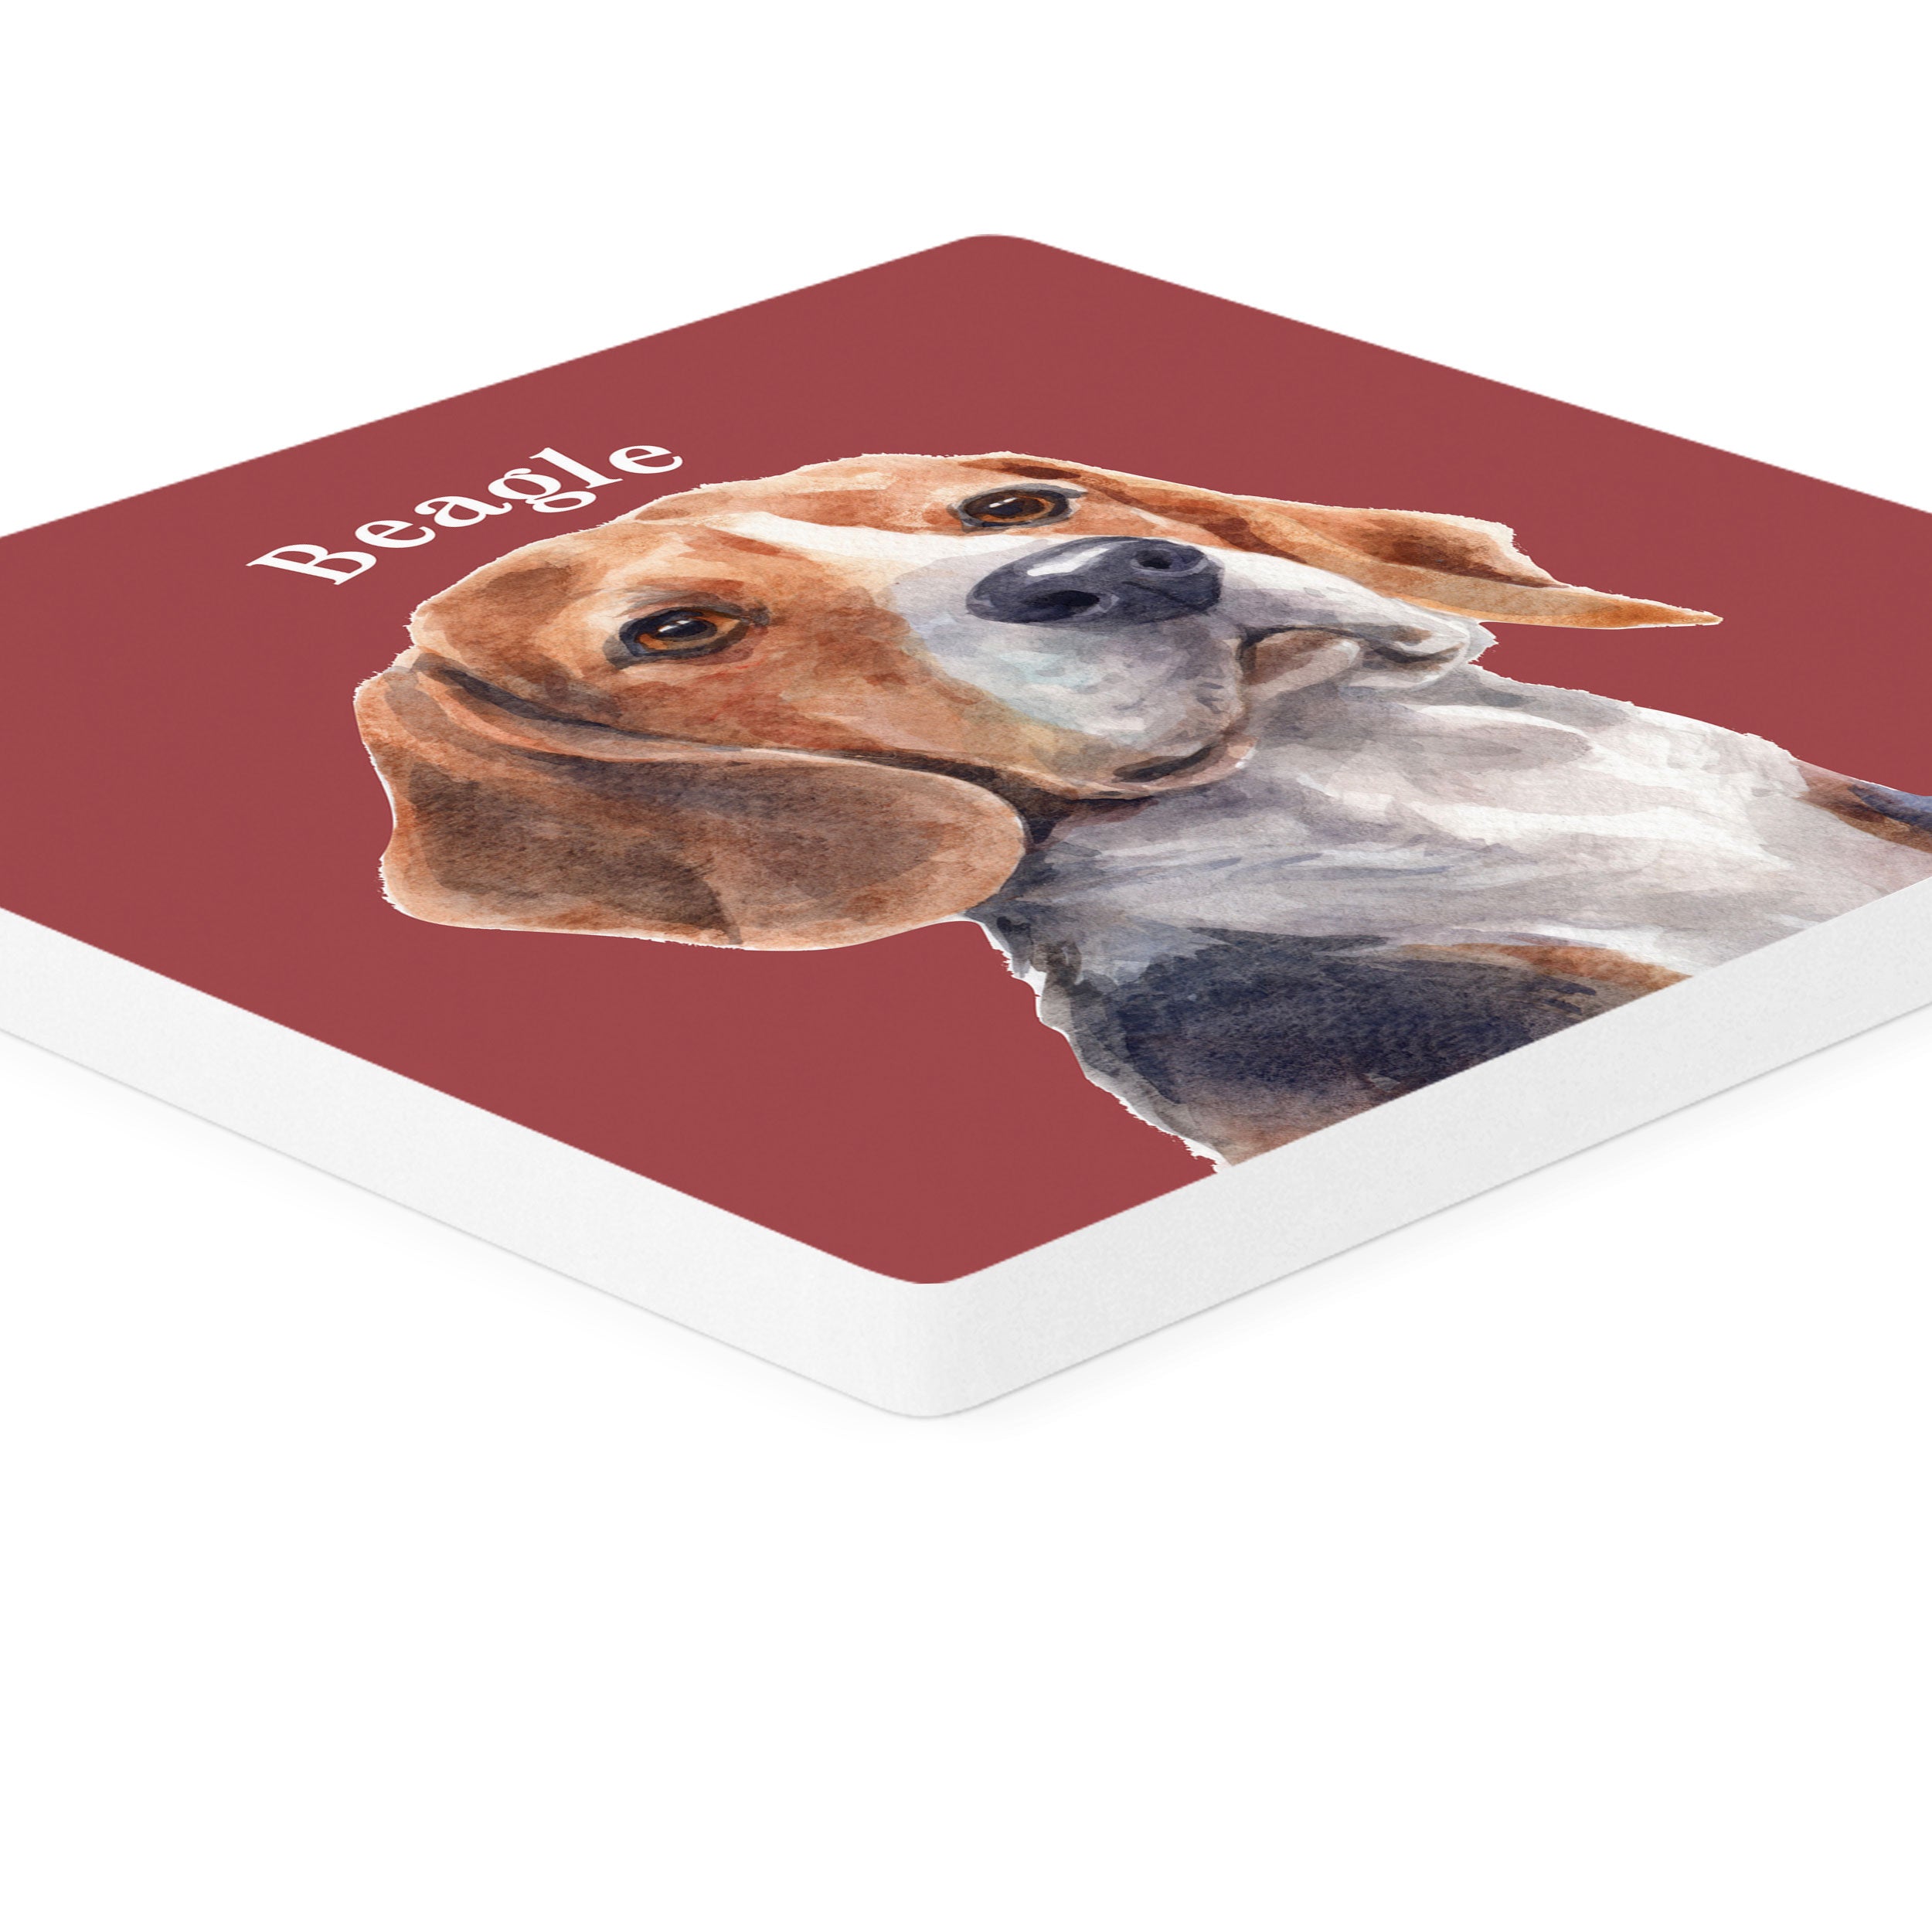 Beagle Coaster